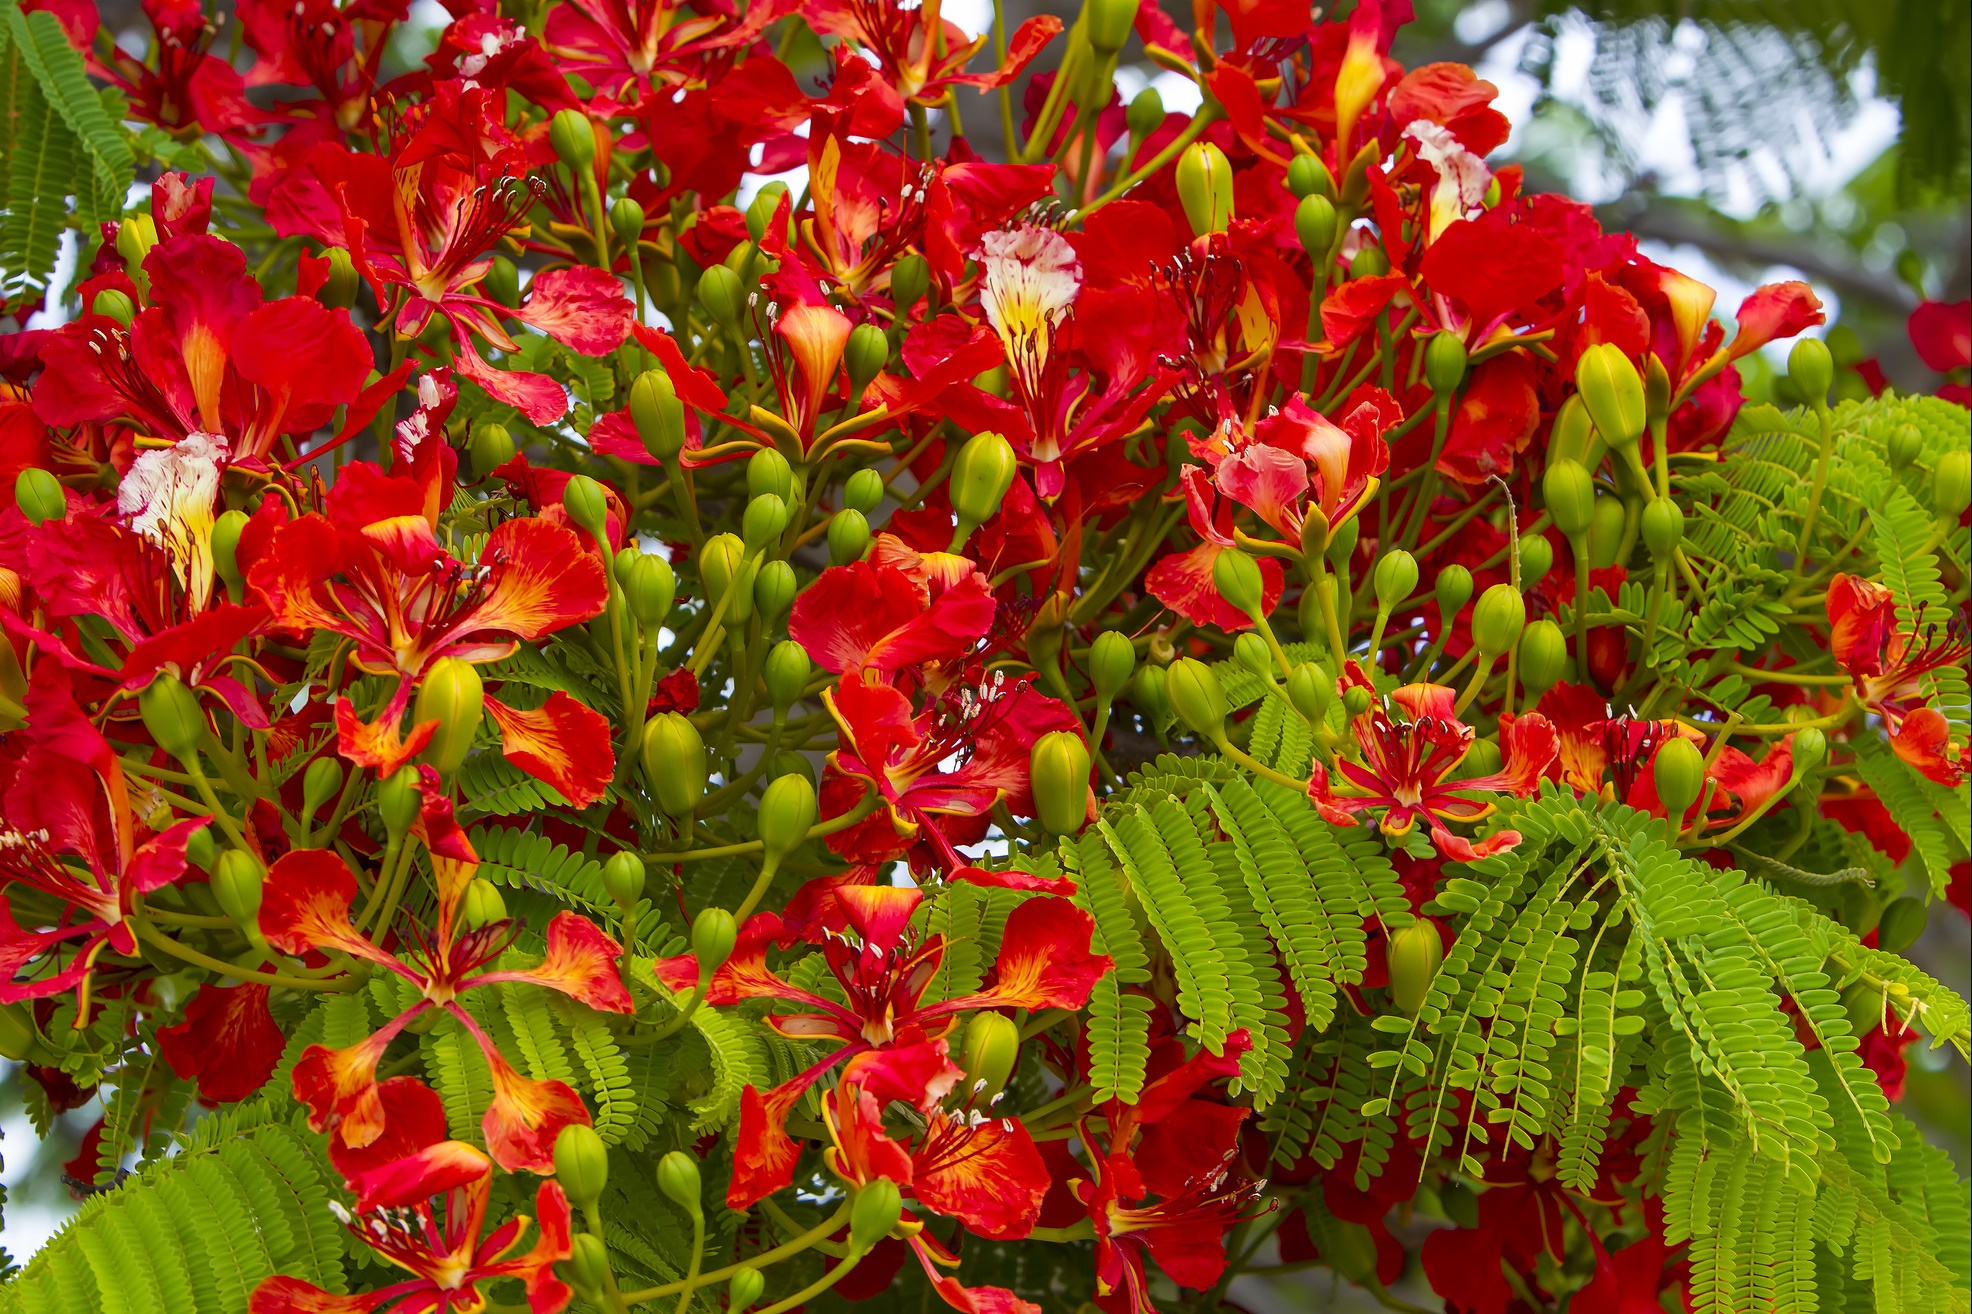 Ngắm hoa phượng đẹp đến nao lòng đỏ rực khắp đường phố Hà Nội